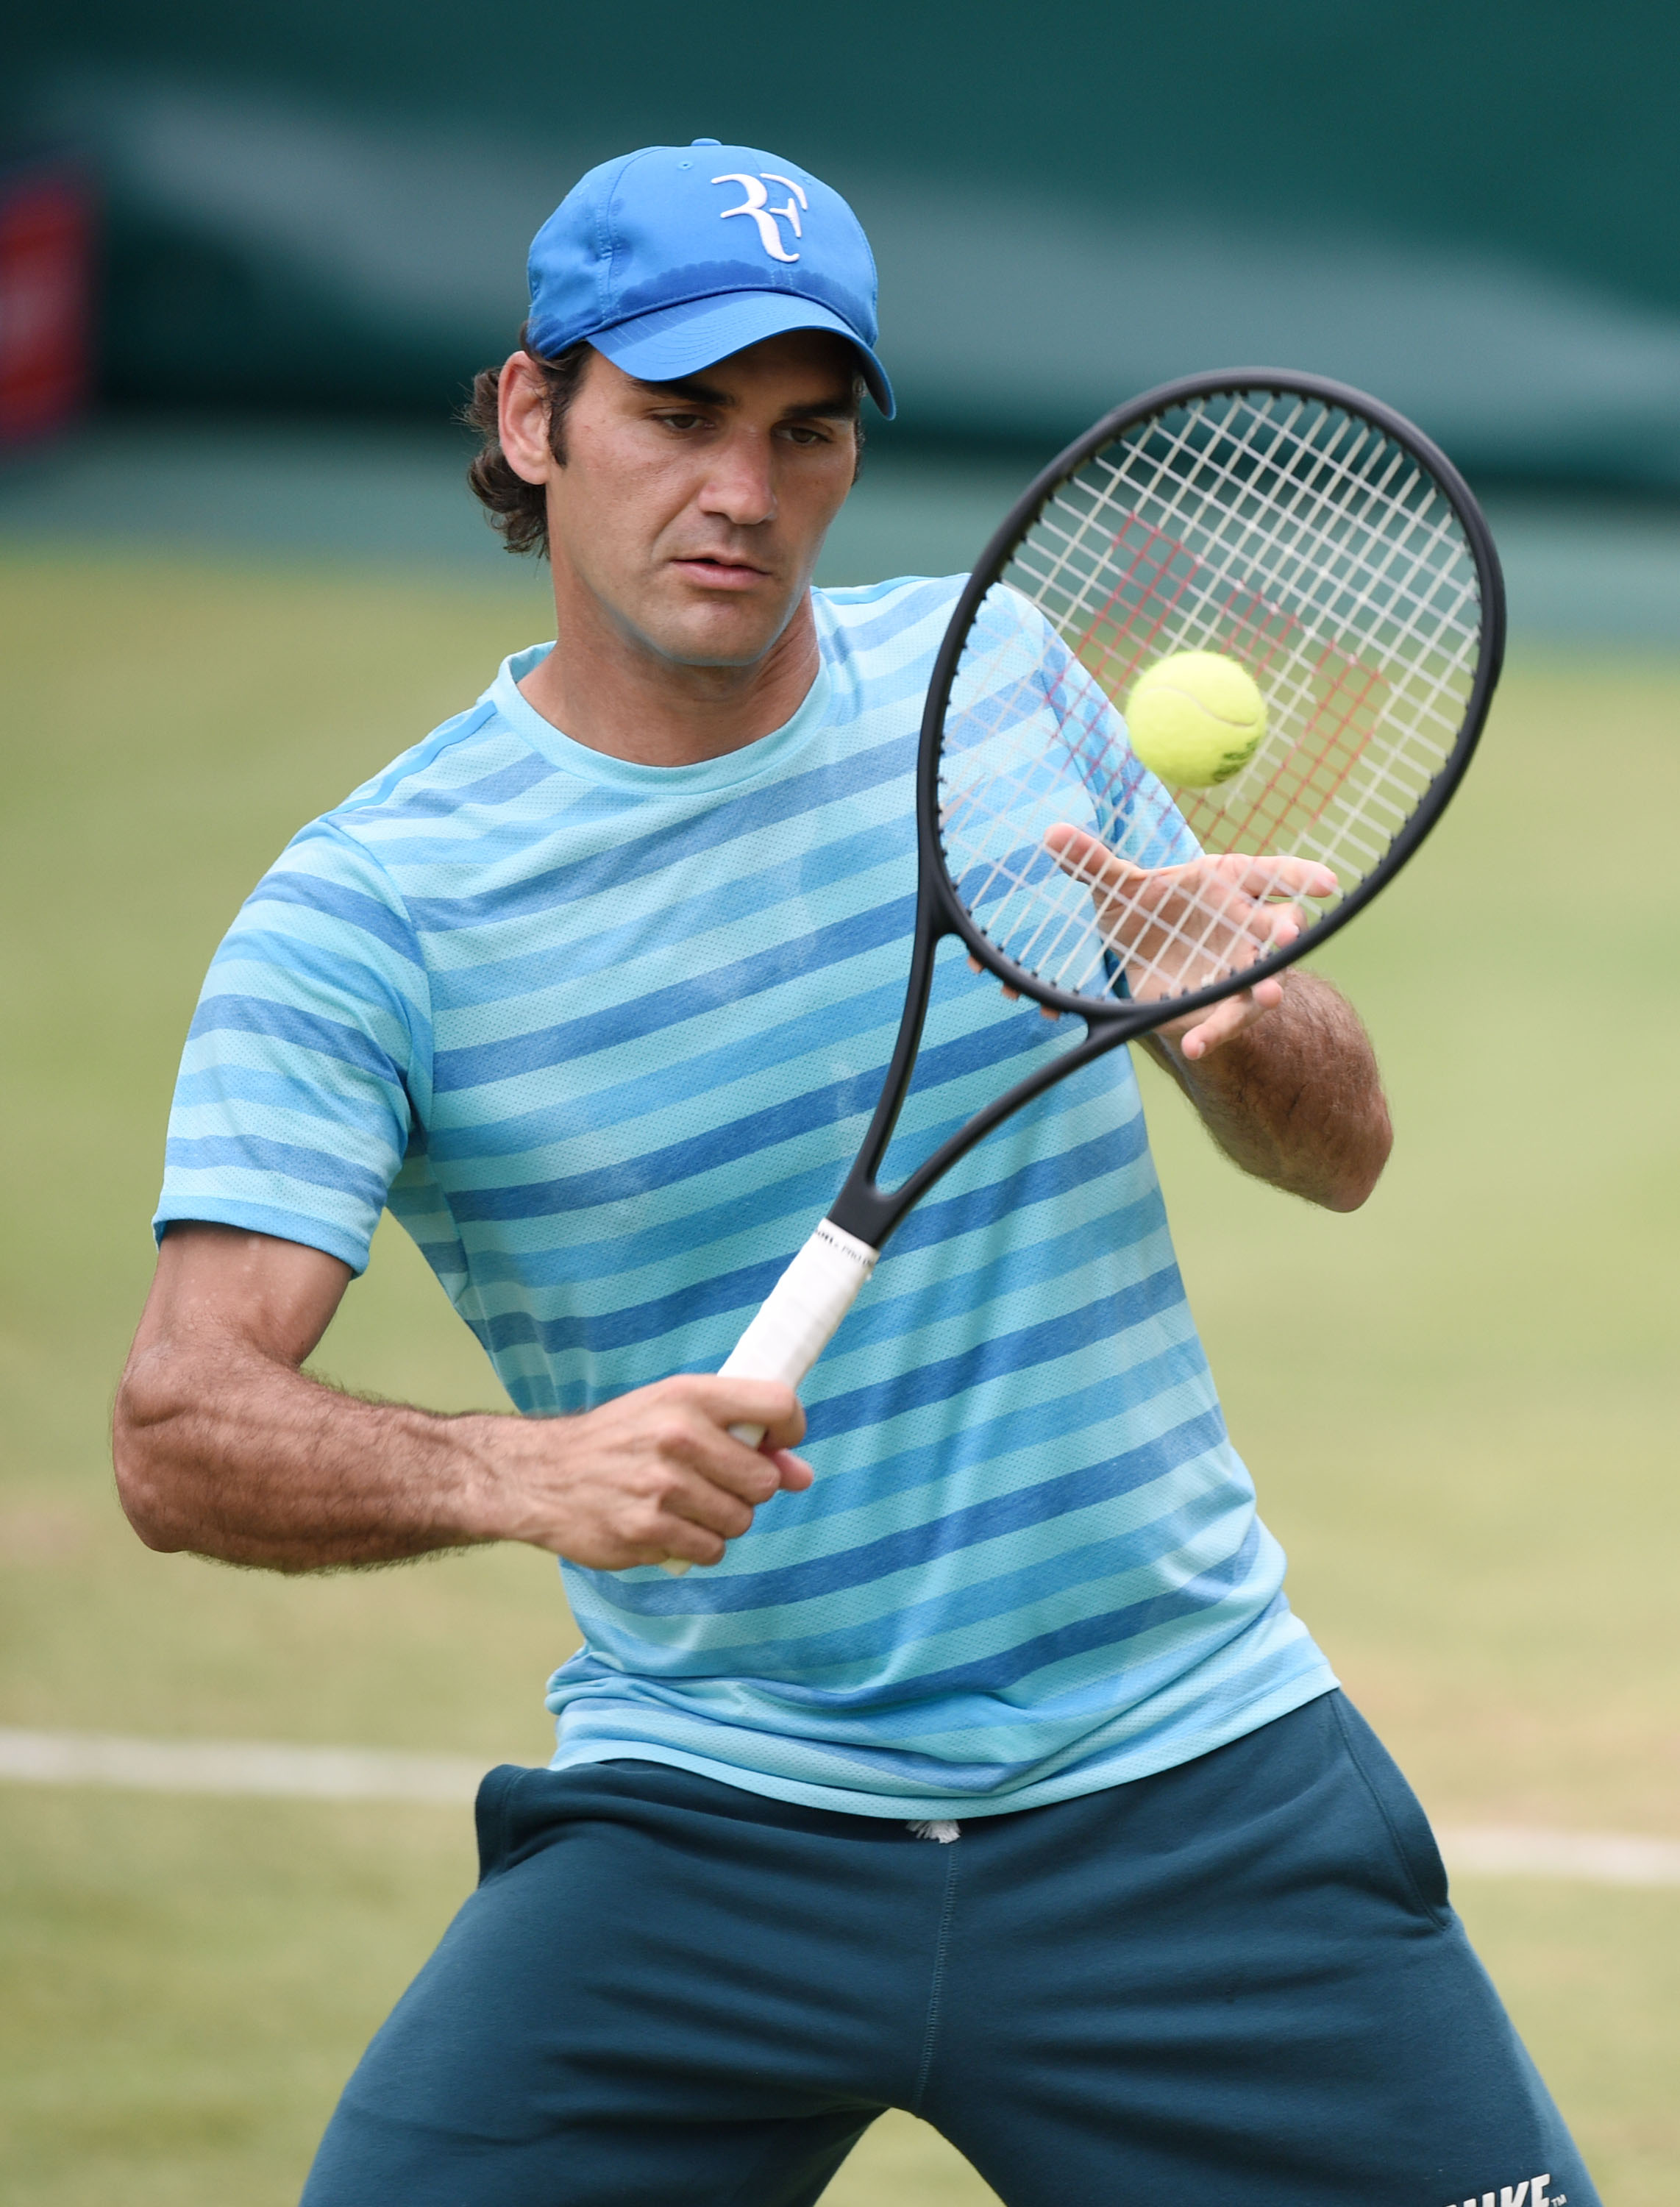 Roger Federer ses her ved Gerry Weber Open 2014 i Halle, Tyskland